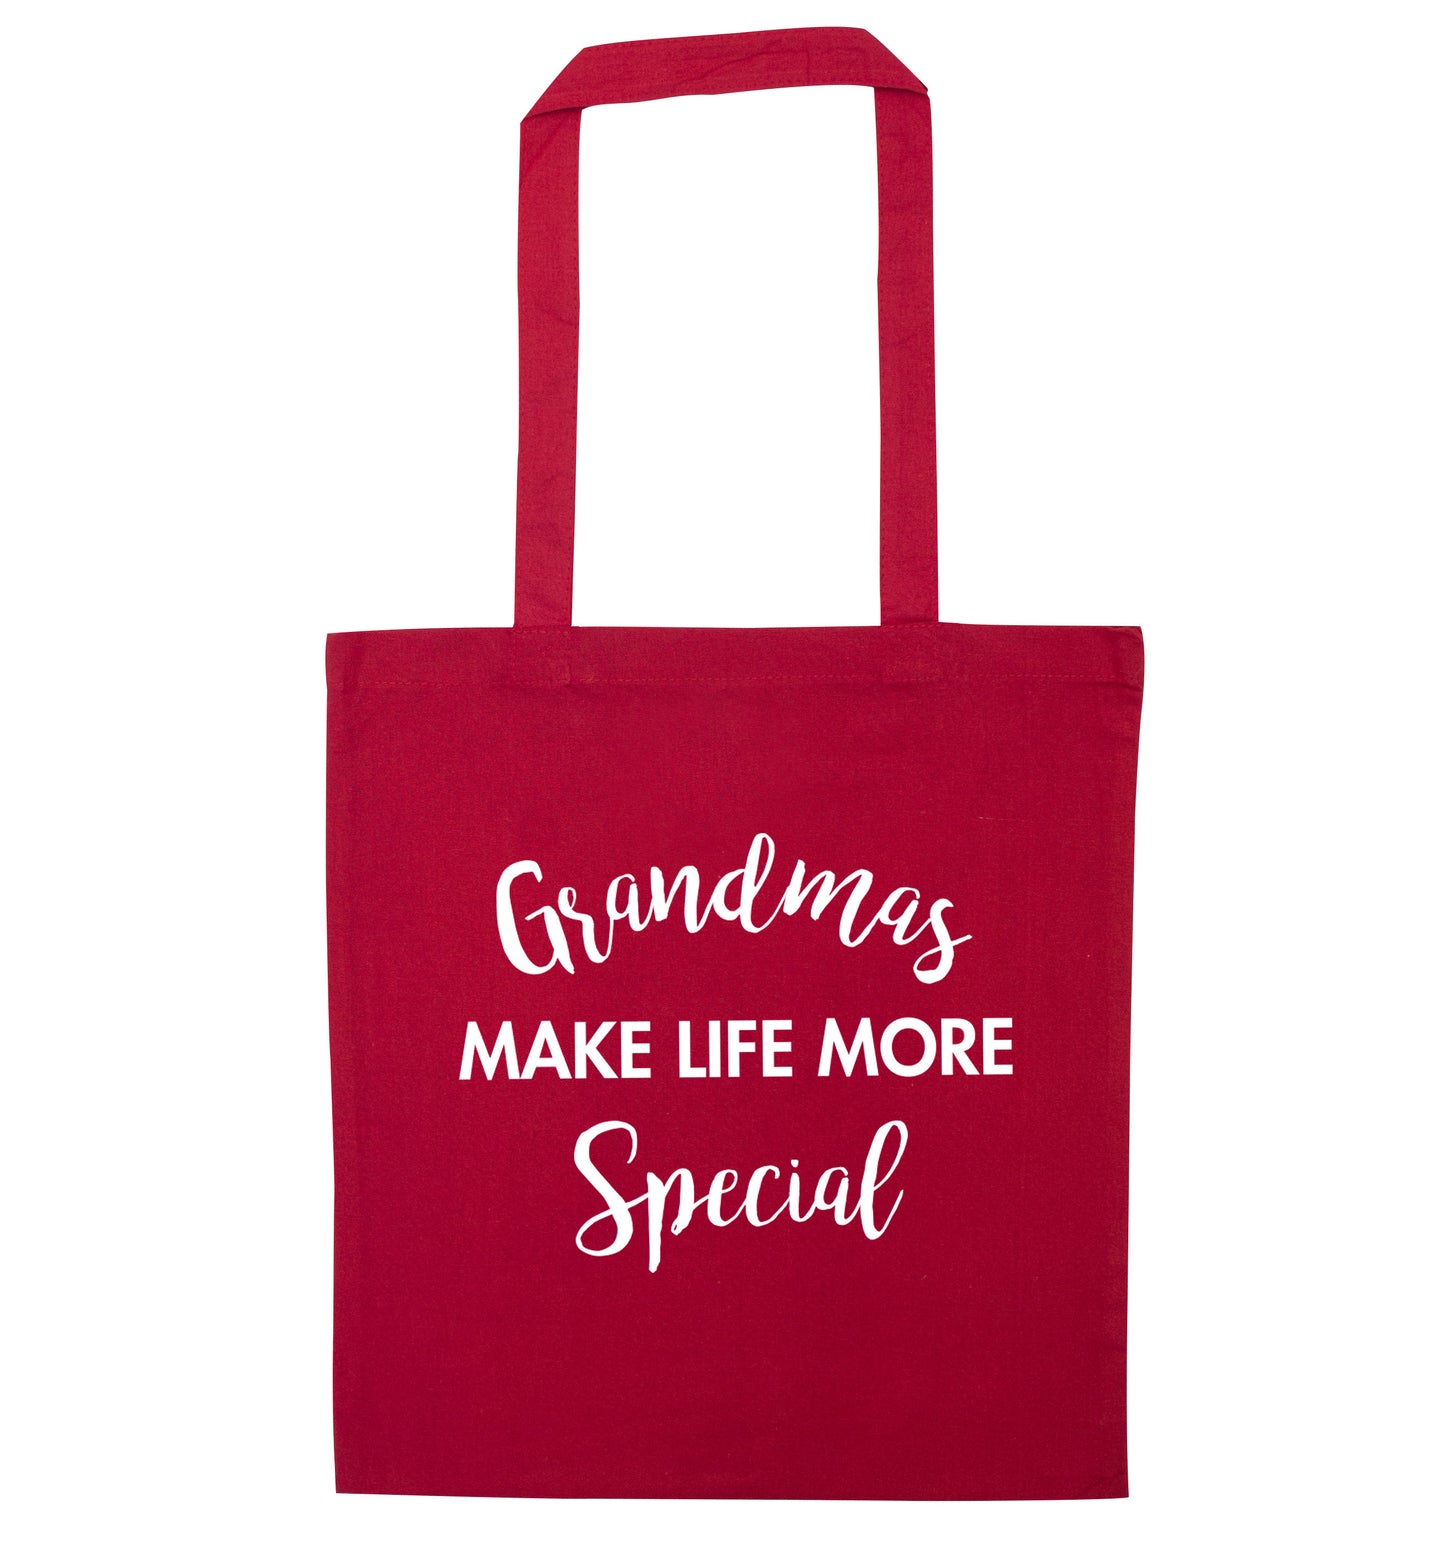 Grandmas make life more special red tote bag